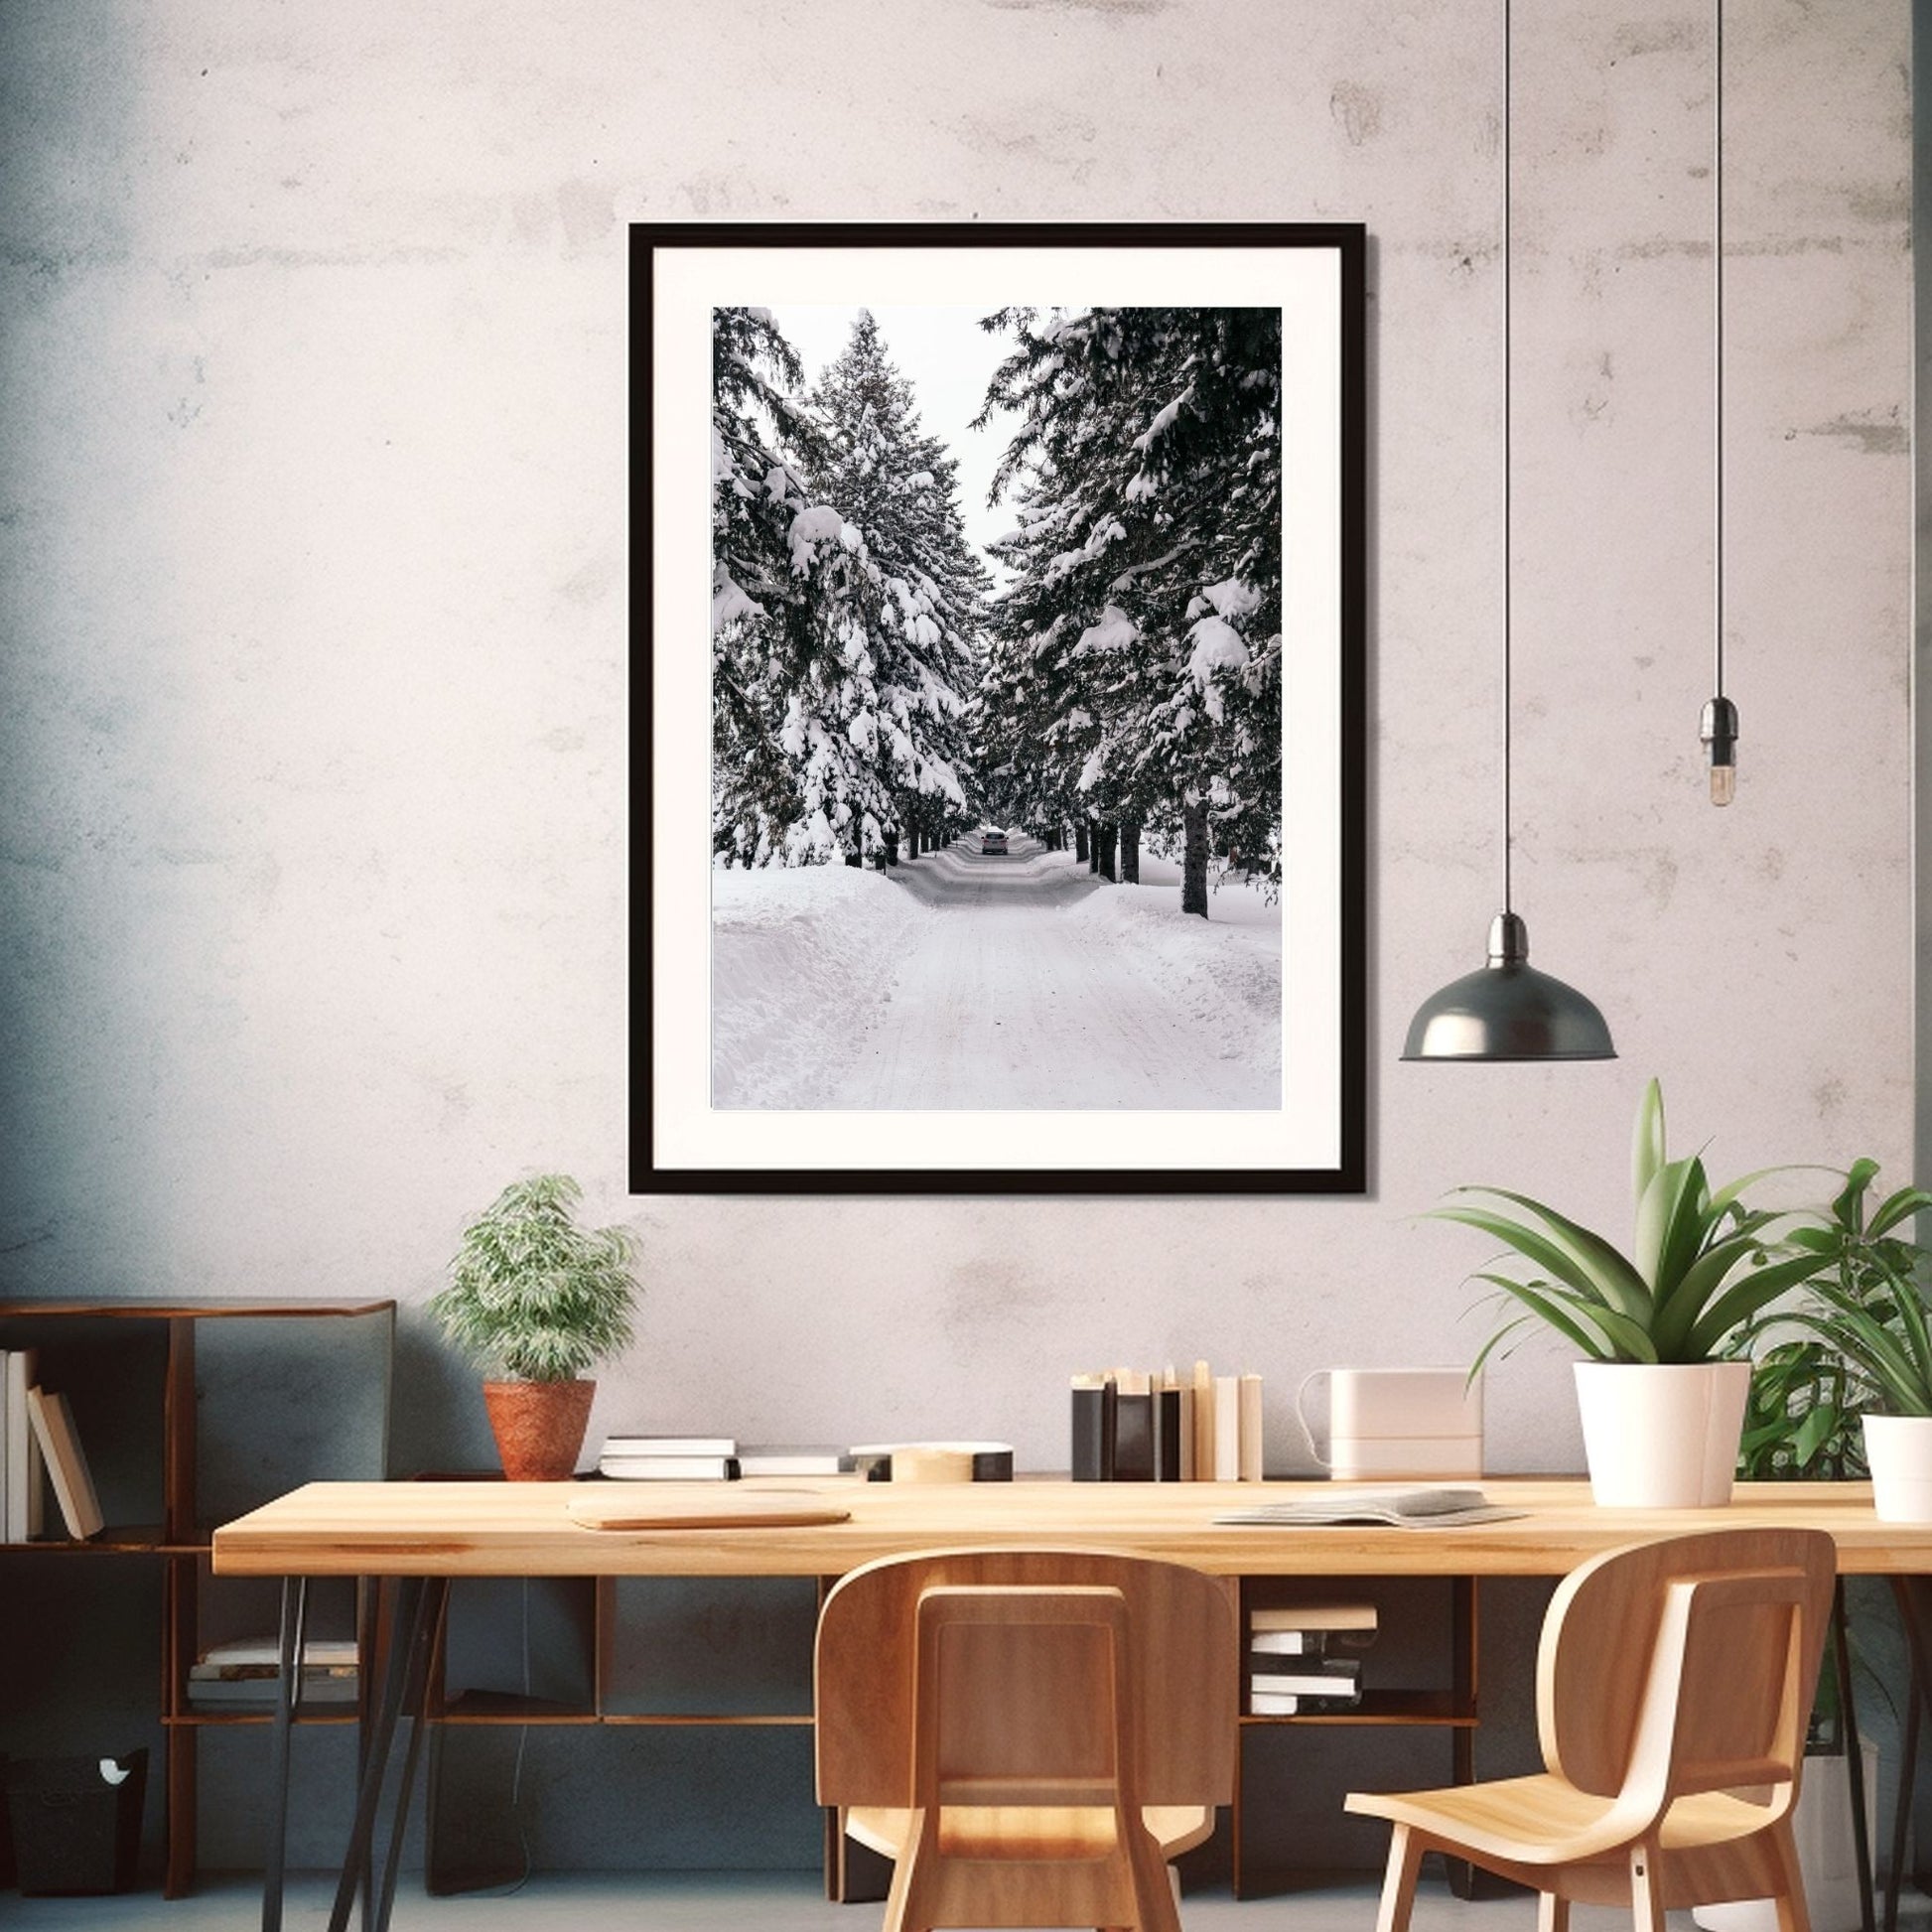 Vinterlandskap No1. Fotografi i sort-hvitt som plakat eller lerret. Plakat har en hvit kant rundt som gir dybde og fremhever motivet. Illustrasjonen viser fotografiet i en sort ramme på en vegg ved et spisebord.